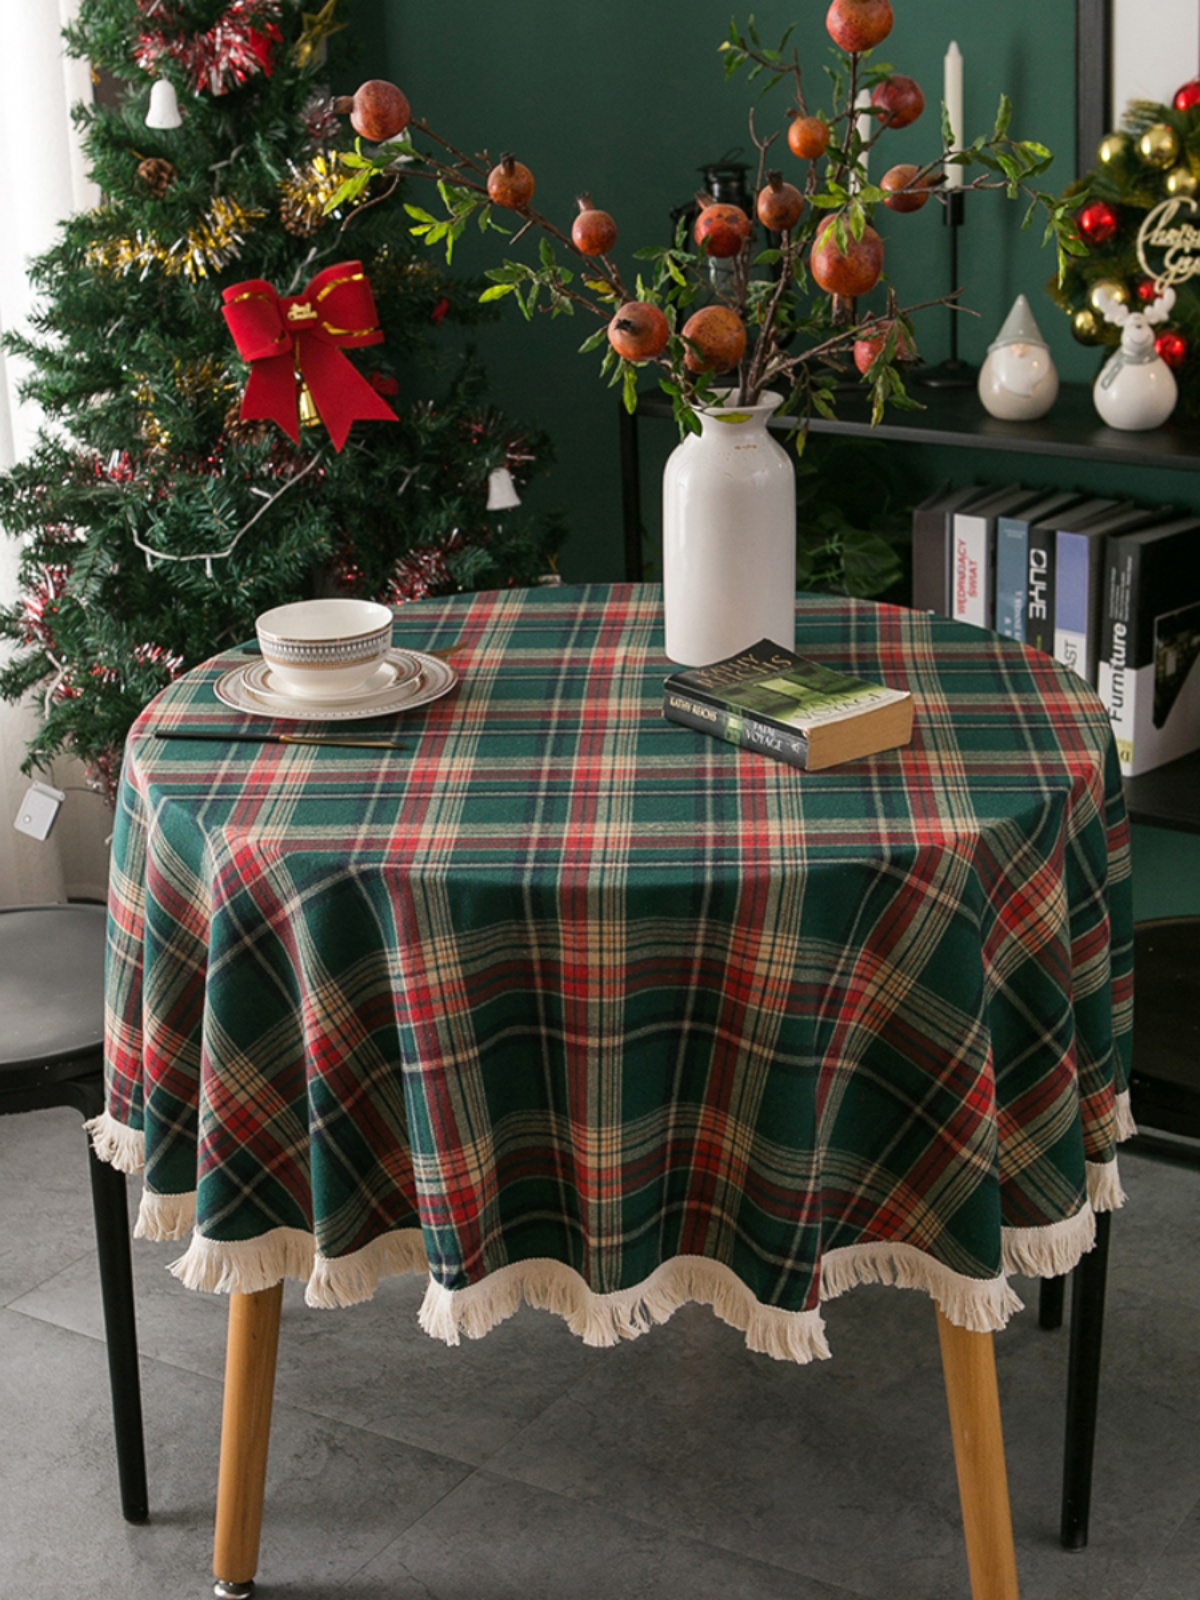 美式聖誕節複古紅綠格子流囌圓桌佈節日裝飾台佈北歐圓形餐桌蓋巾